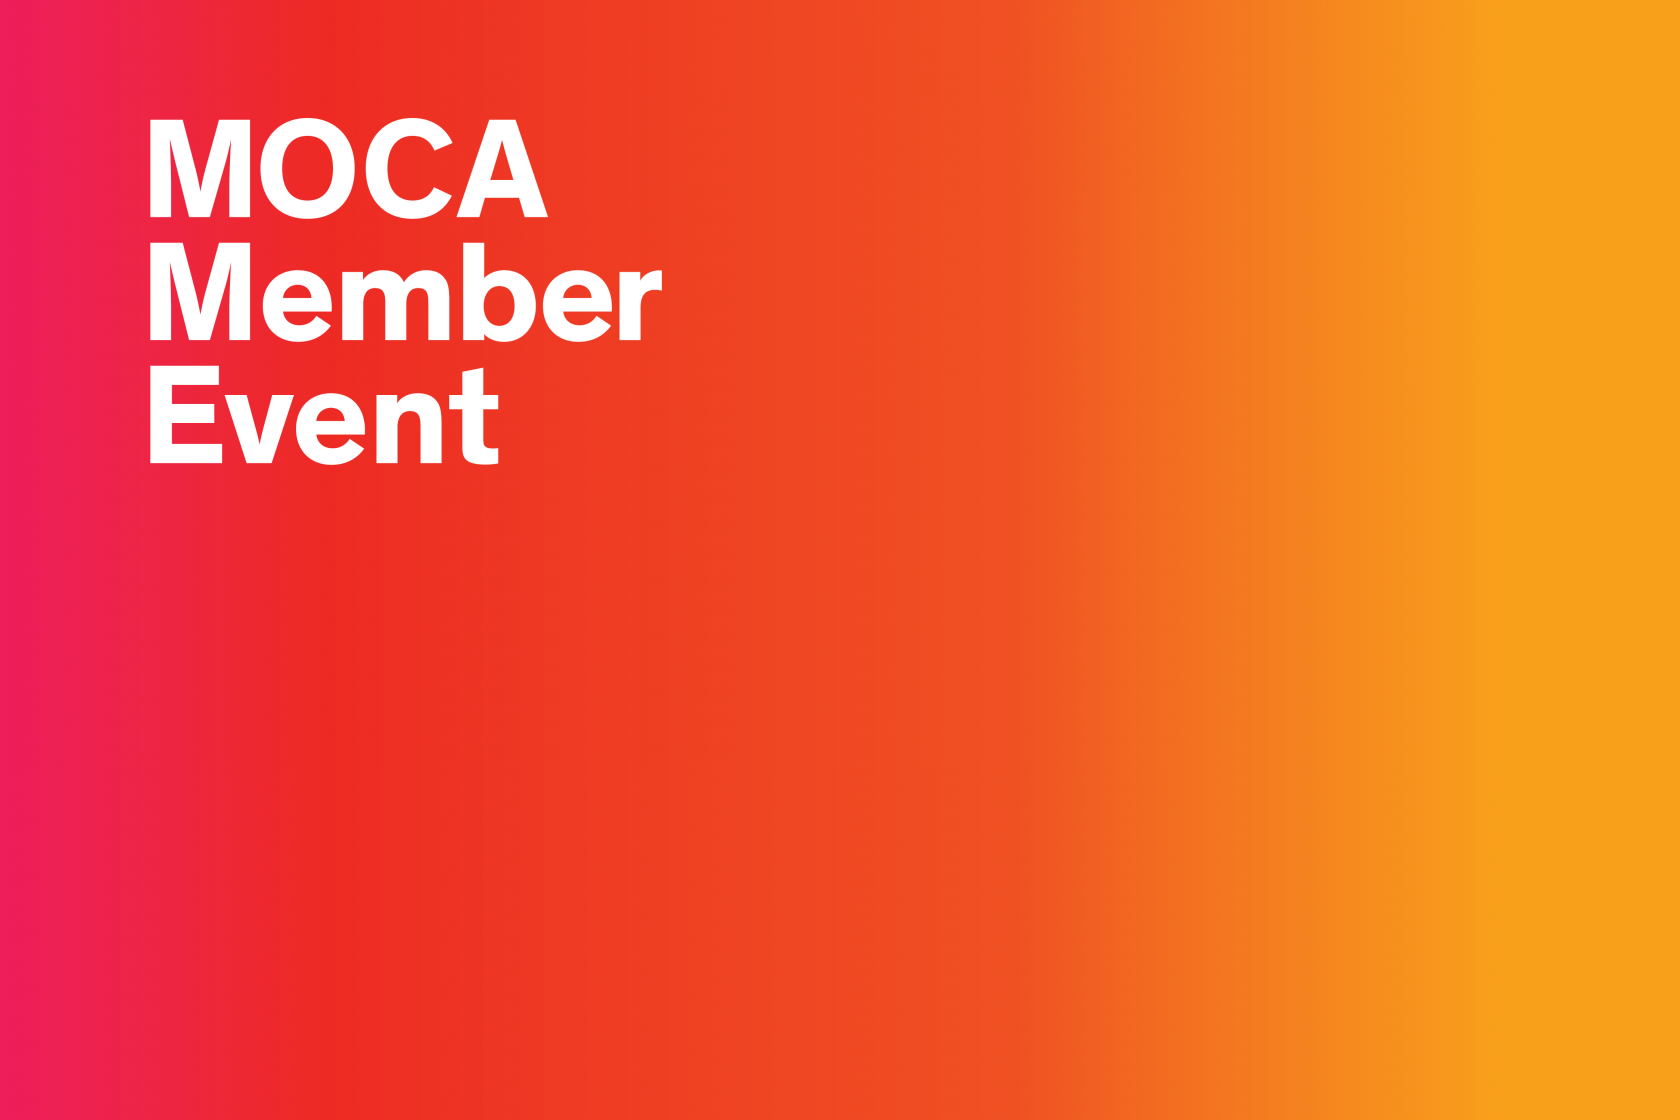 MOCA Member Event